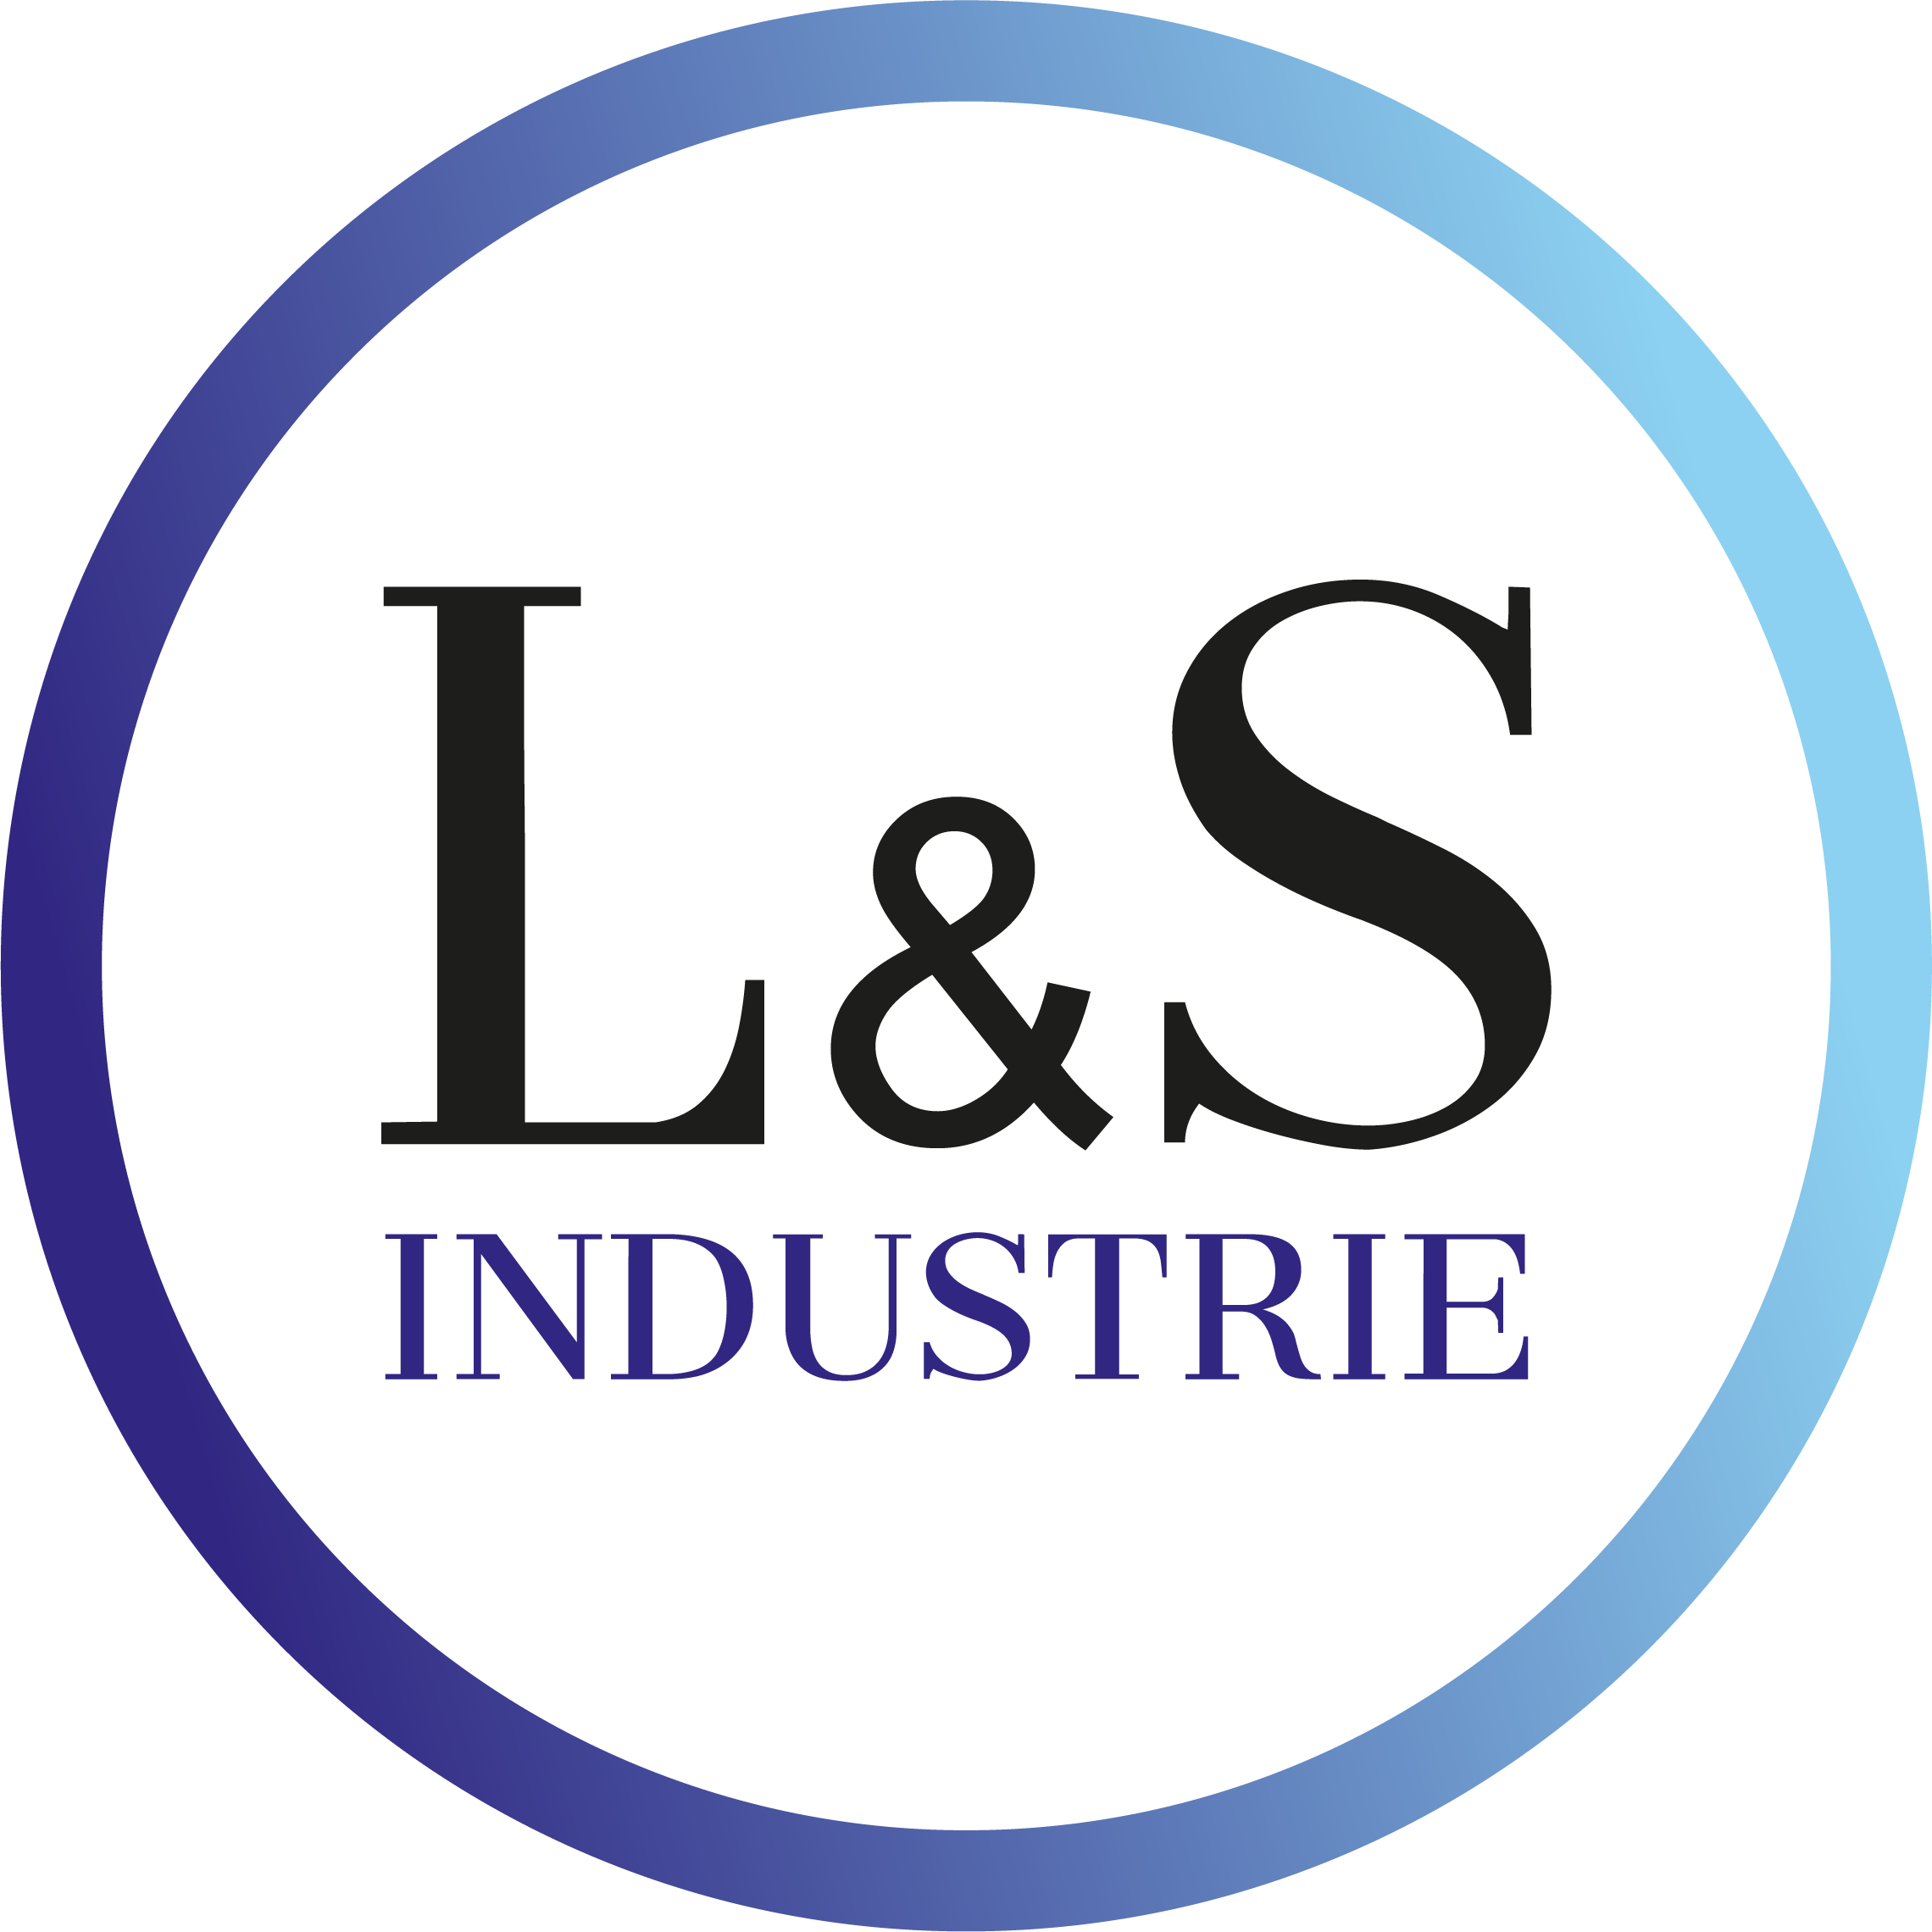 L&S Industrie GBR | Service und Monatge für automatische Industrietore, Tür- und Verladesysteme, Schnellauftore und Hangertore.